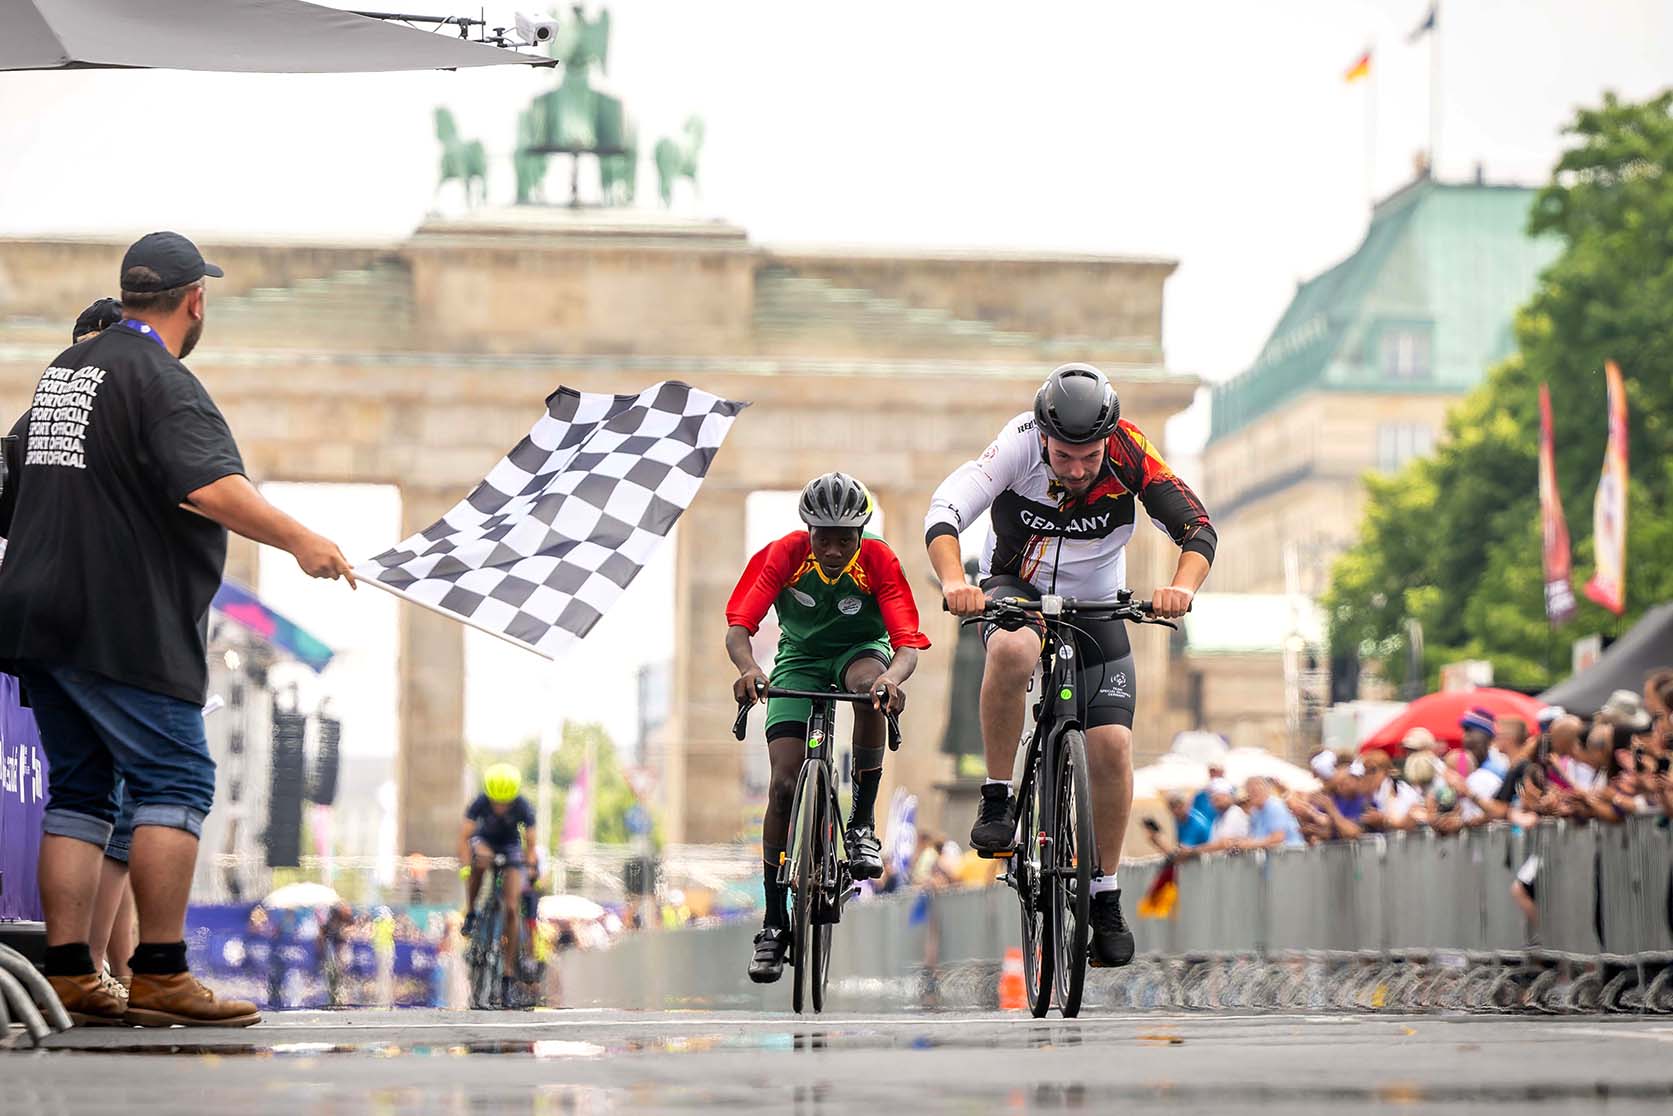 Zwei Radrennfahrer auf der Rennstrecke. Links ein Mann mit Zielflagge, rechts Zuschauende am Rand der Straße. Im Hintergrund das Brandenburger Tor.